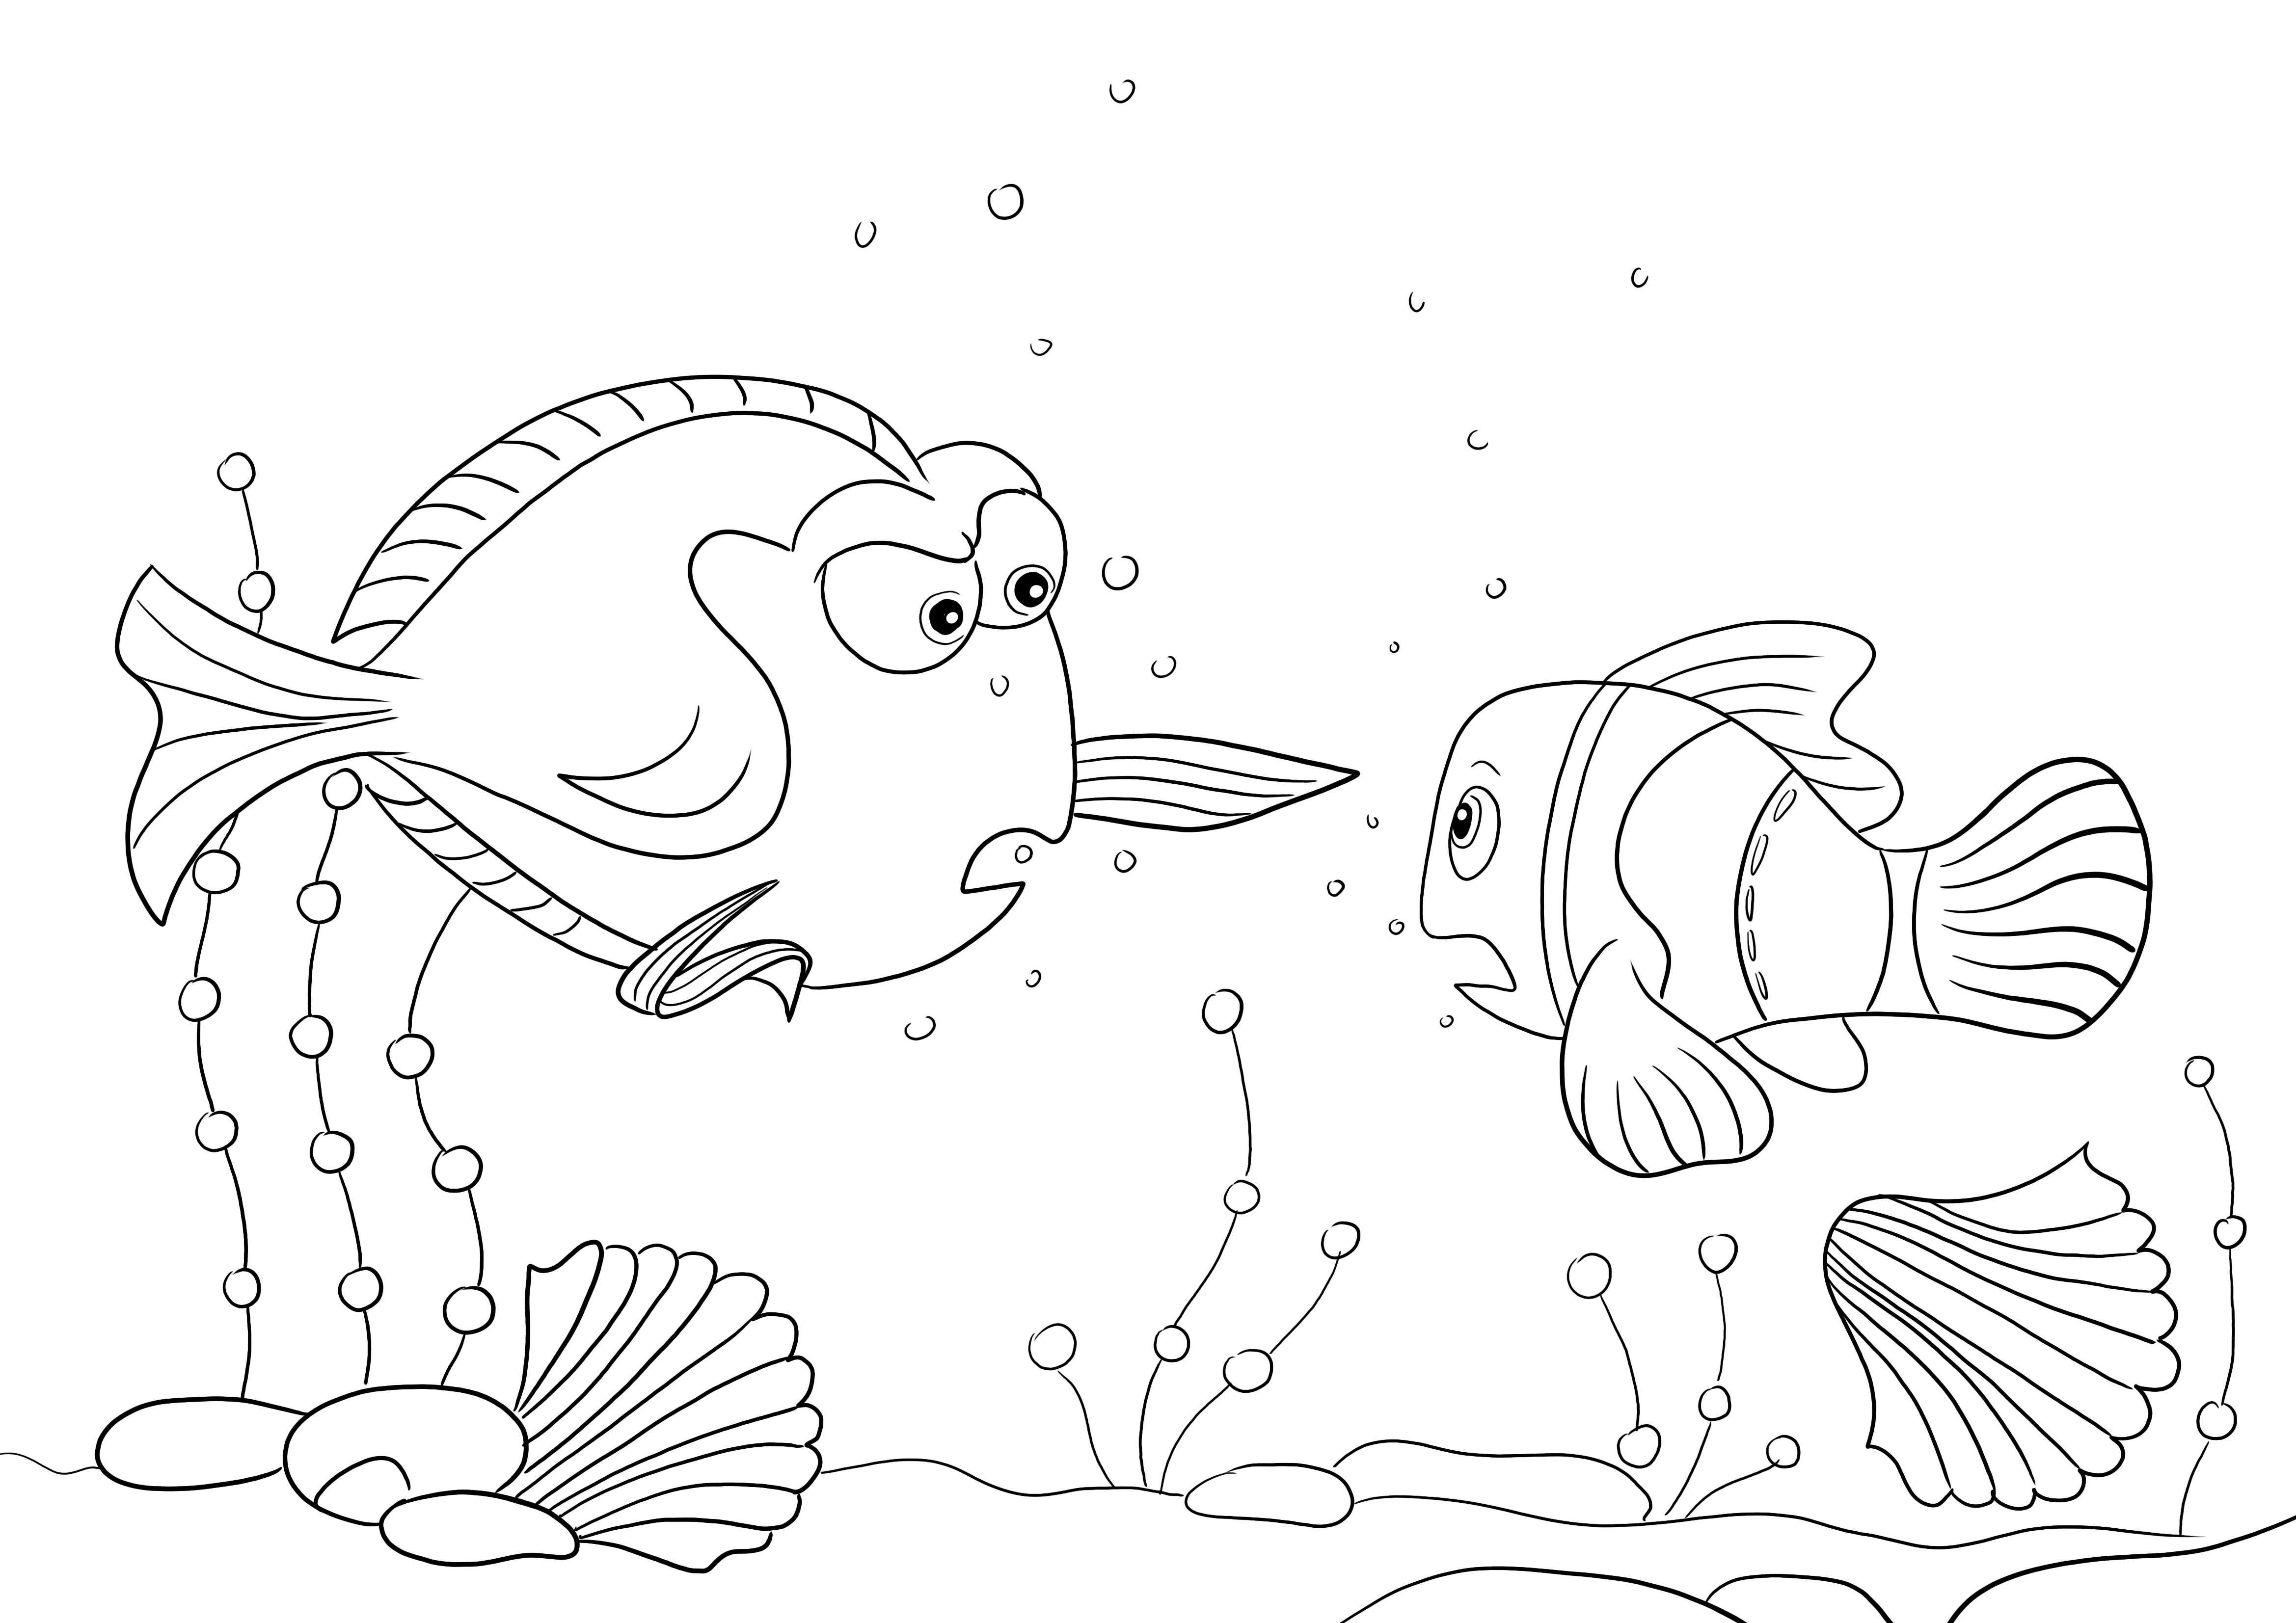 Gambar mewarnai Charlie dan Nemo gratis untuk anak-anak untuk diunduh dan diwarnai dengan kesenangan